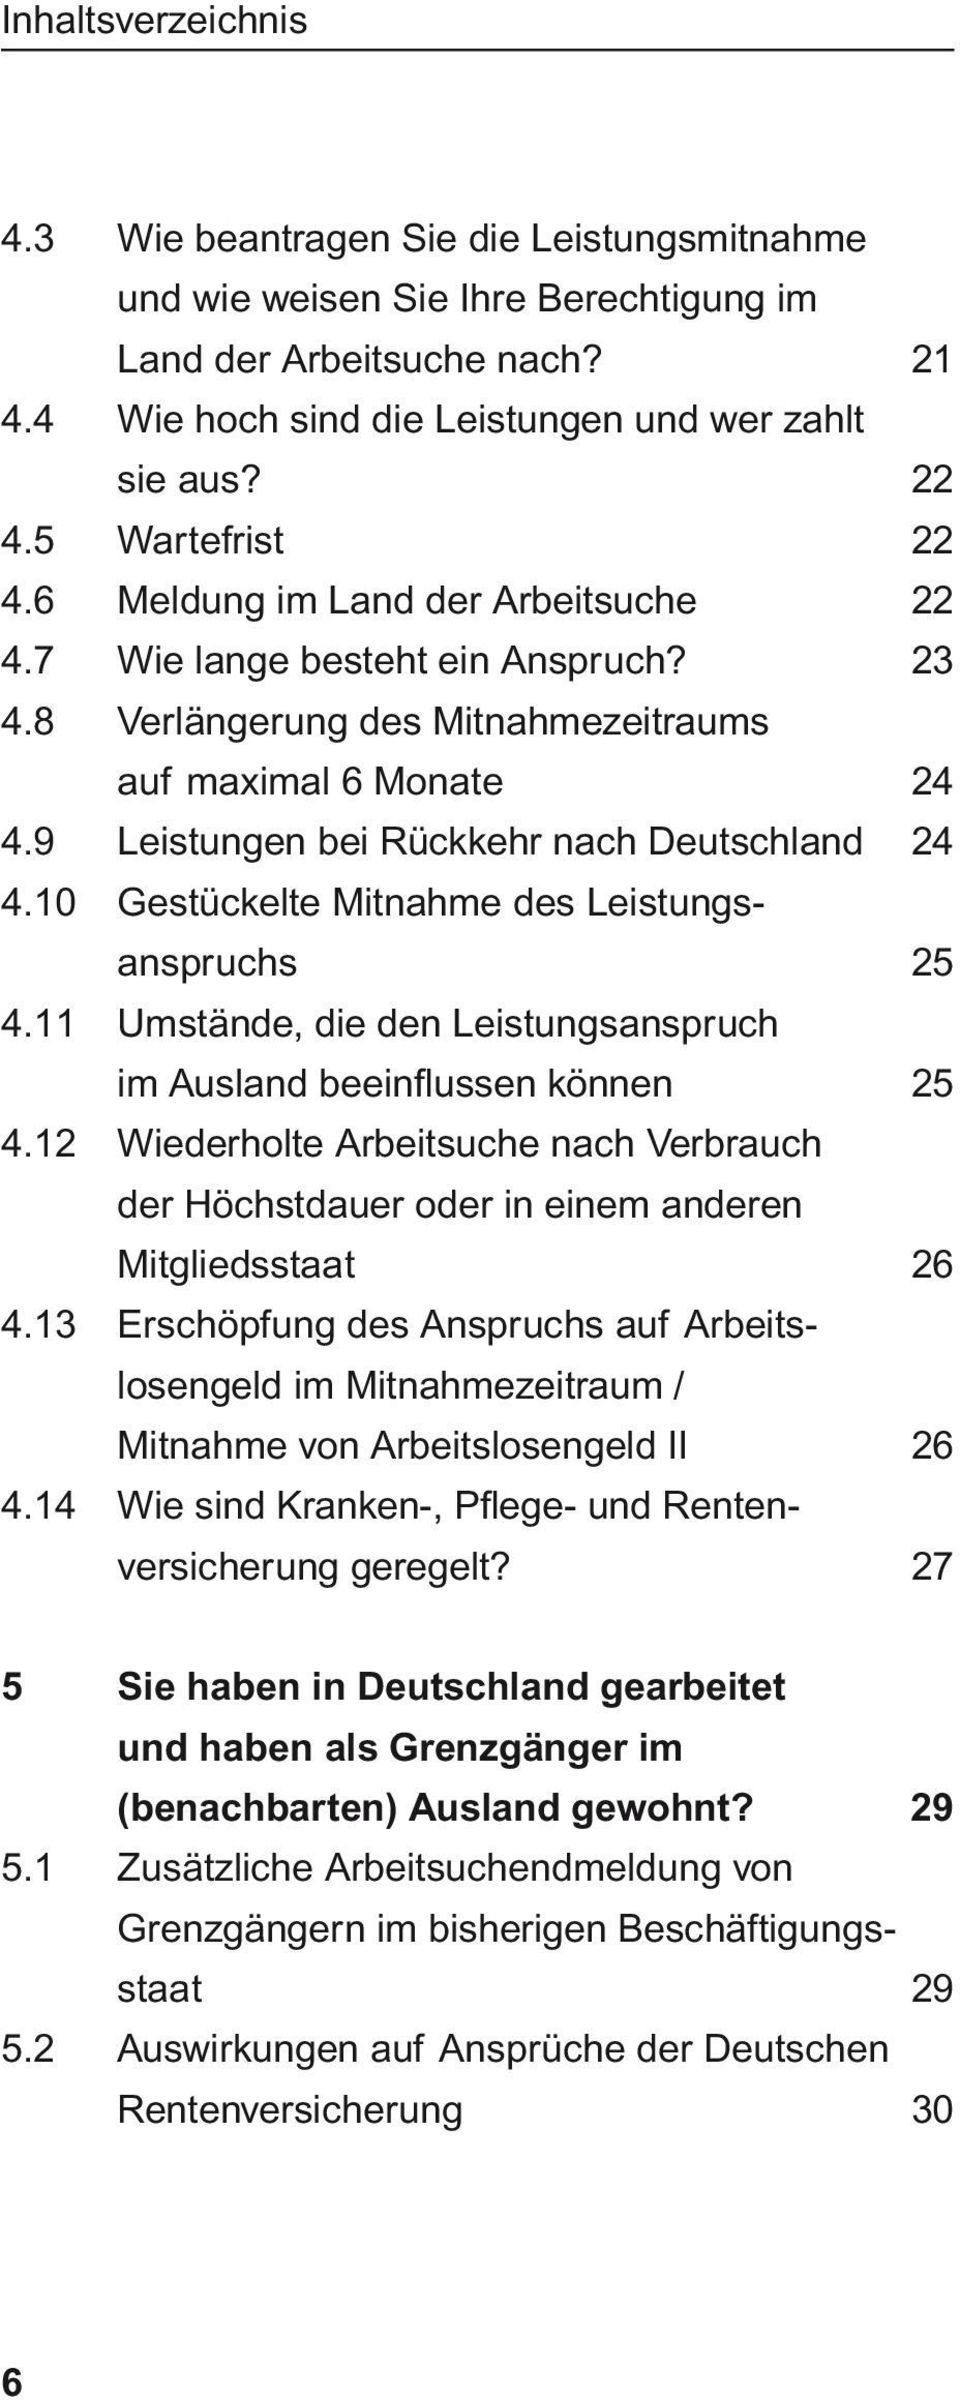 9 Leistungen bei Rückkehr nach Deutschland 24 4.10 Gestückelte Mitnahme des Leistungsanspruchs 25 4.11 Umstände, die den Leistungsanspruch im Ausland beeinflussen können 25 4.